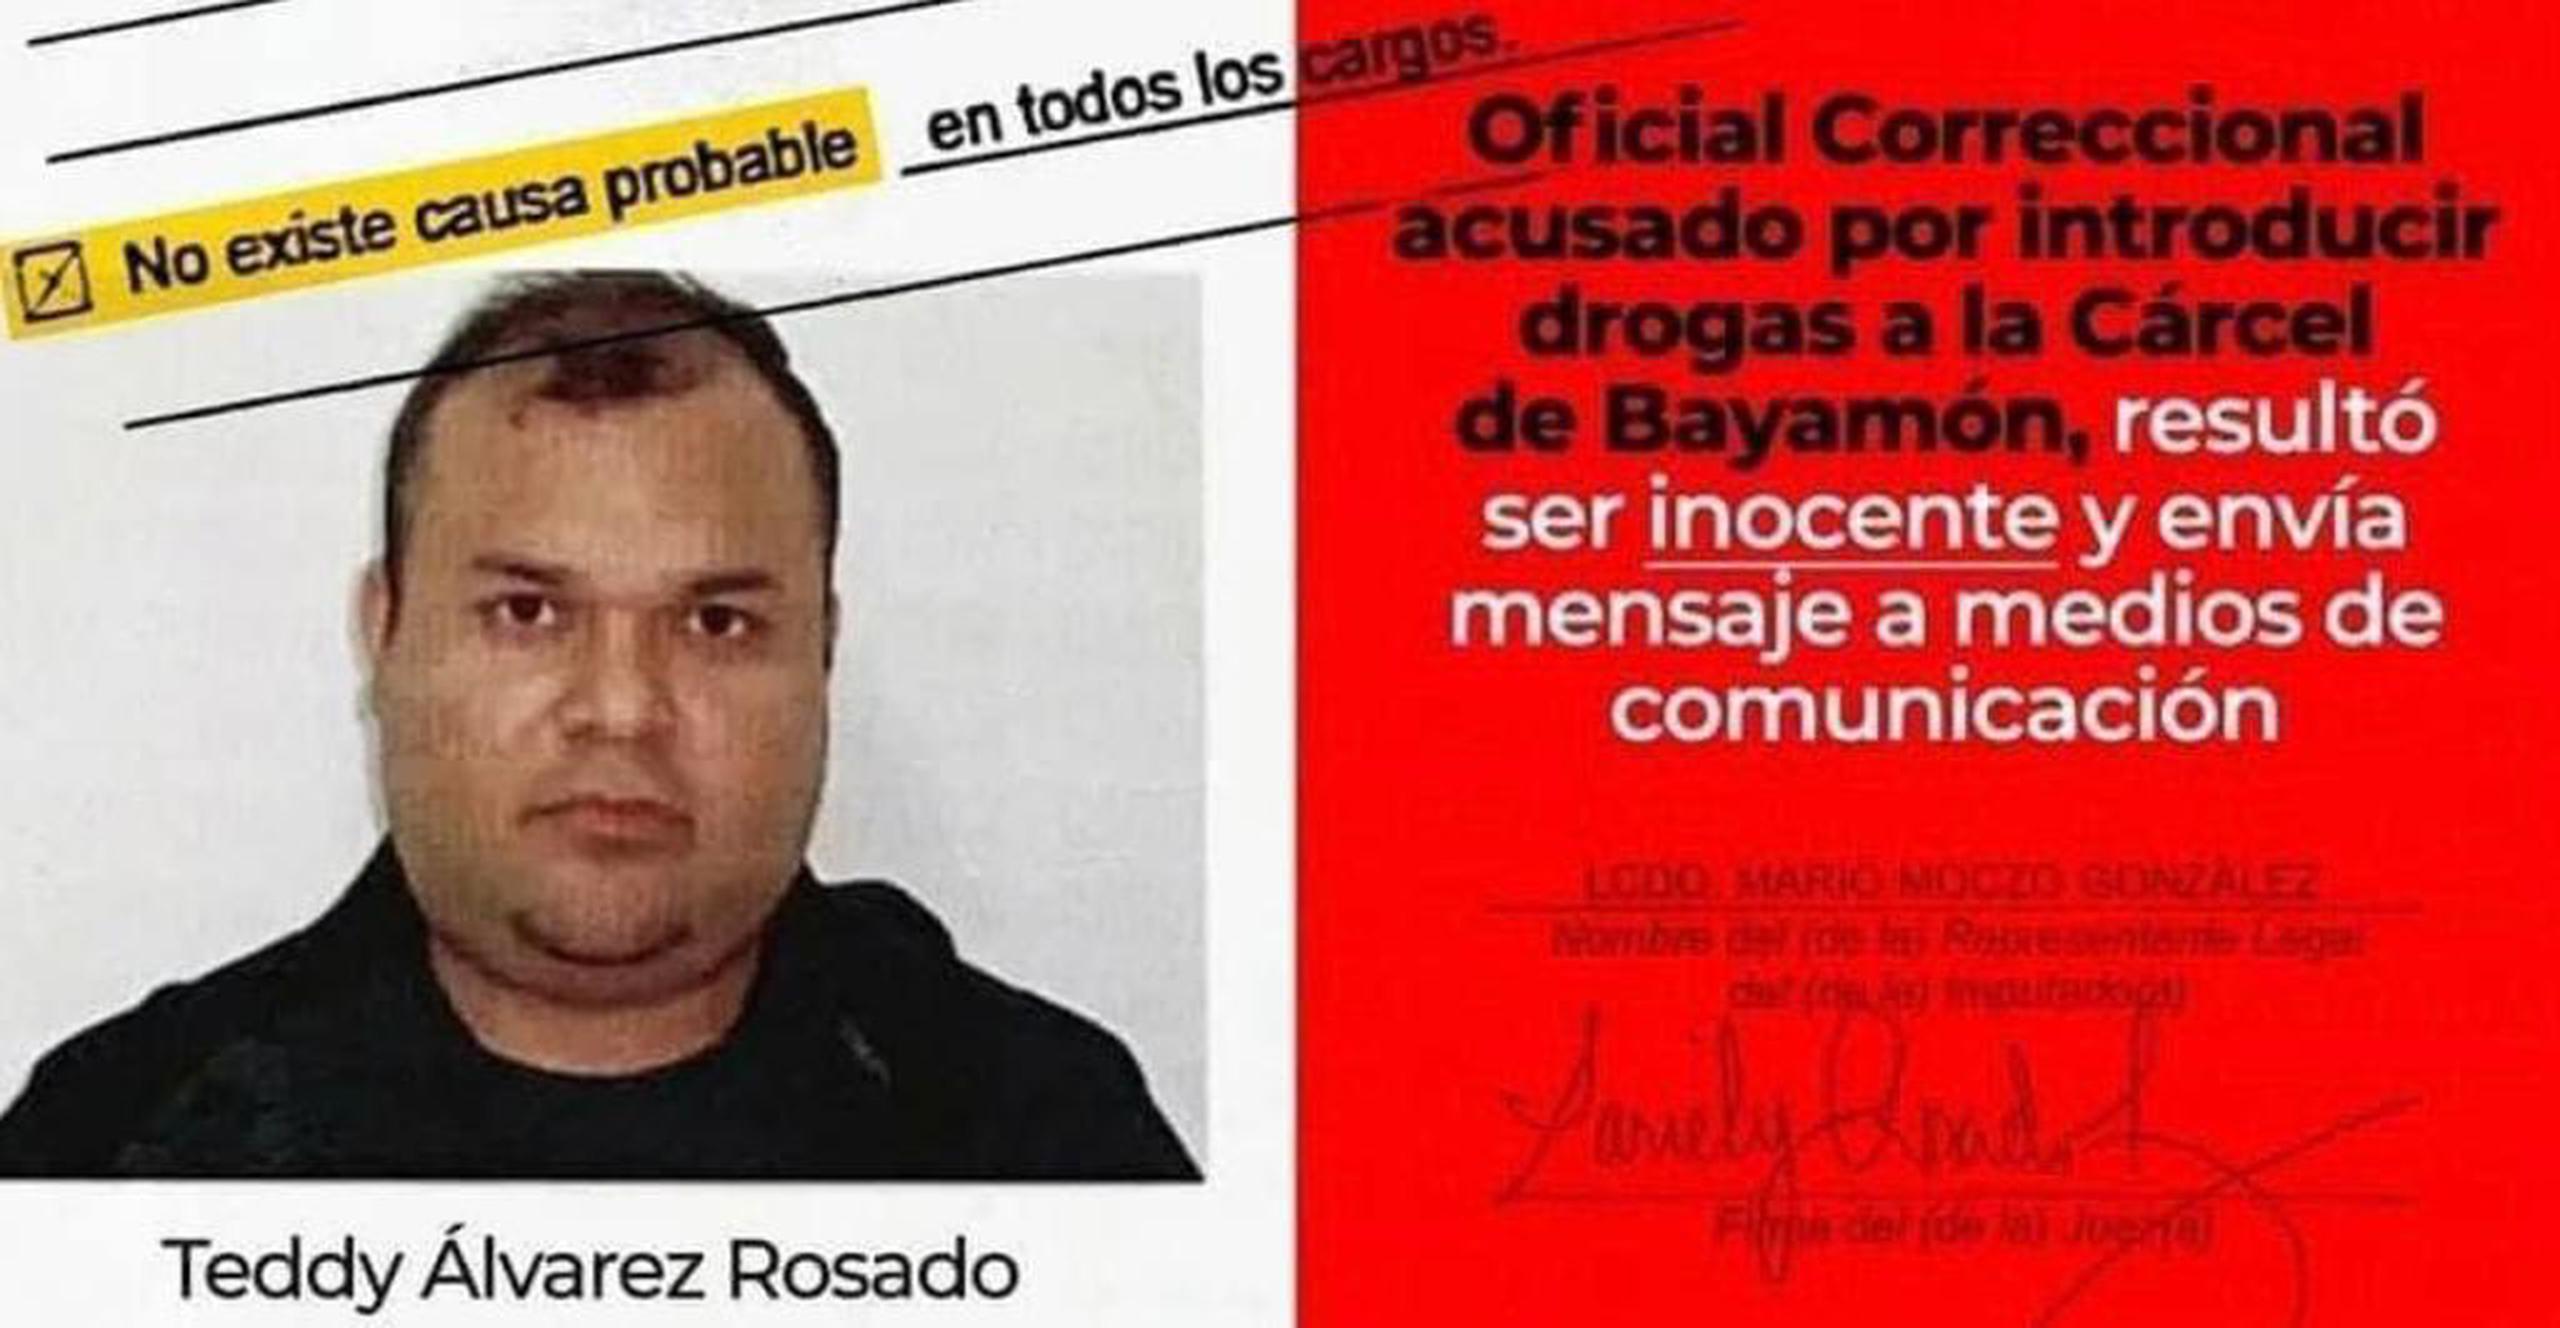 Teddy Álvarez Rosado, quien lleva más de un año suspendido de empleo y sueldo como oficial del Departamento de Corrección y Rehabilitación solicitó la restitución de su empleo, los salarios no devengados y que se limpie su imágen.